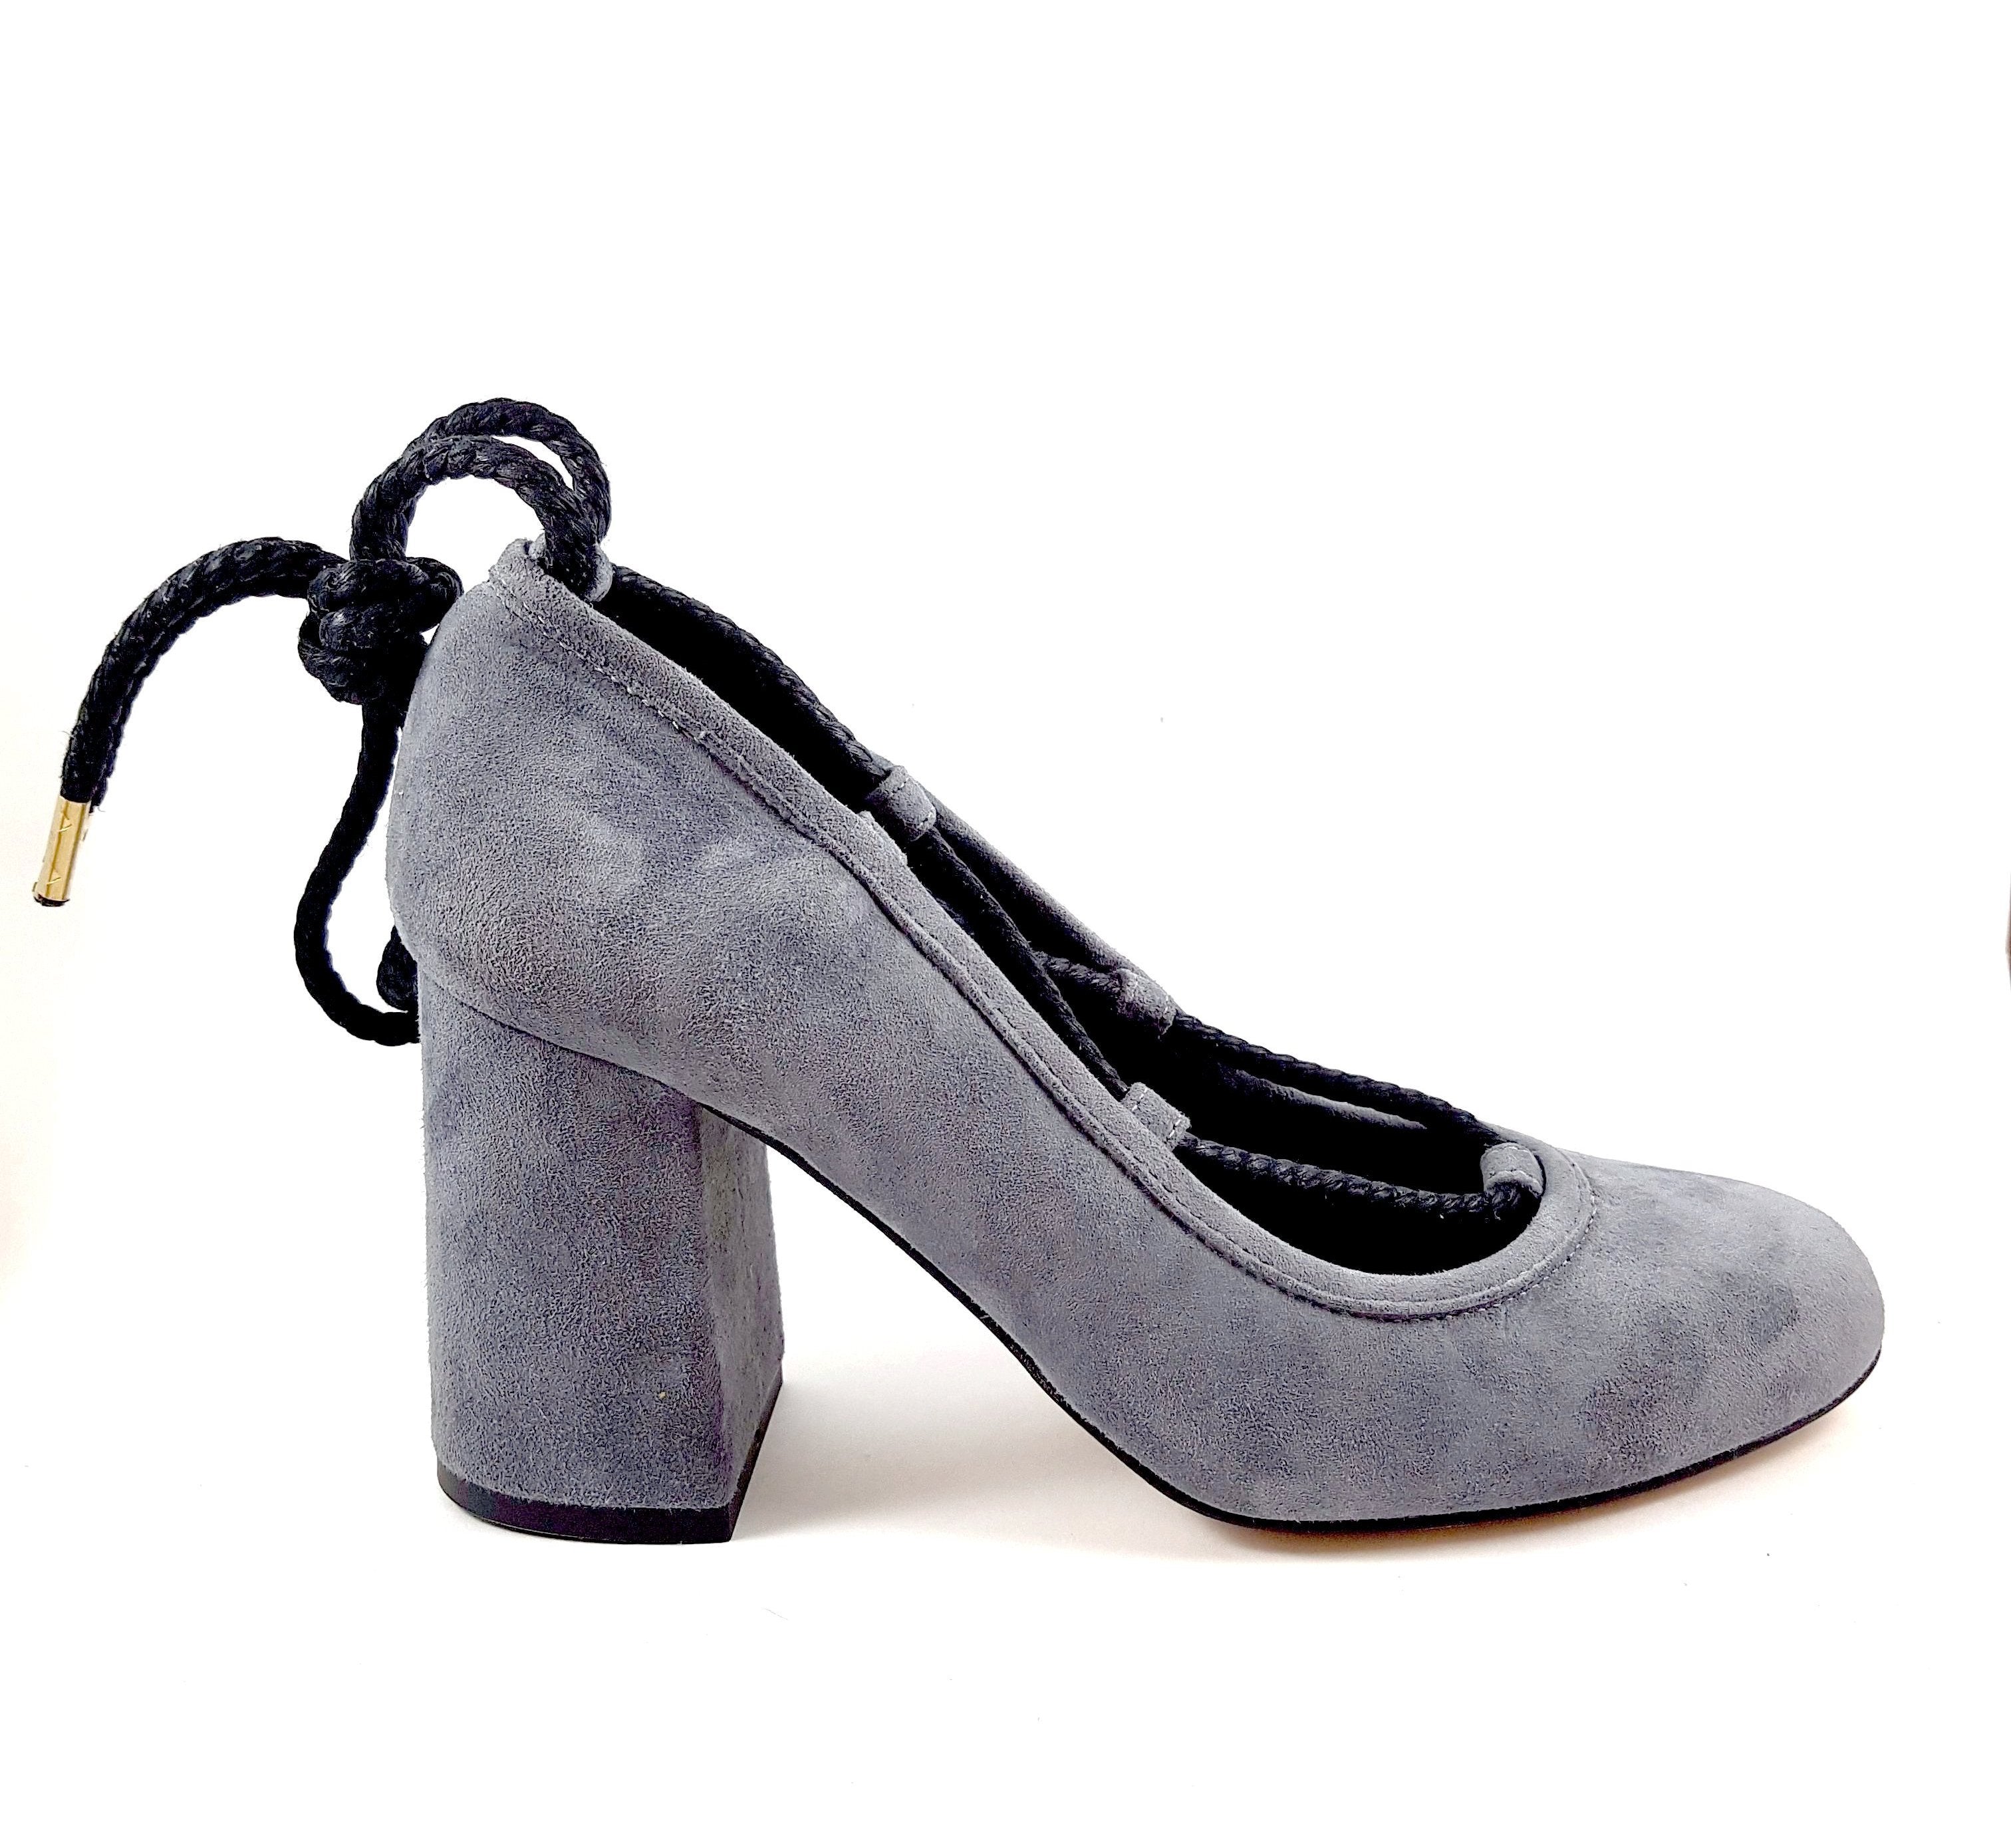 Piluca Gray suede block heel pumps with contrasting tie